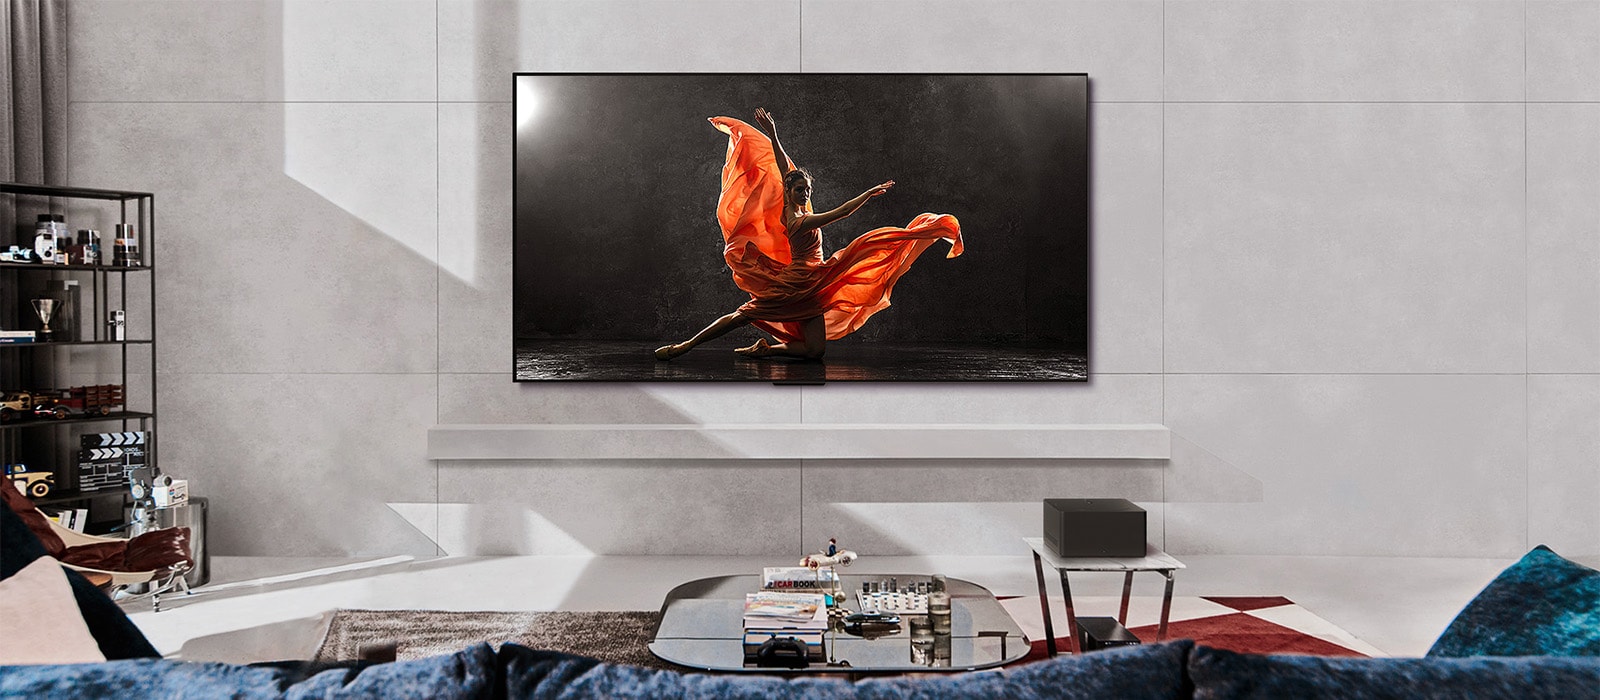 LG SIGNATURE OLED M4 i LG soundbar u savremenom životnom prostoru tokom dana. Na ekranu se prikazuje slika plesača na zamračenoj pozornici na idealnom nivou osvetljenosti.